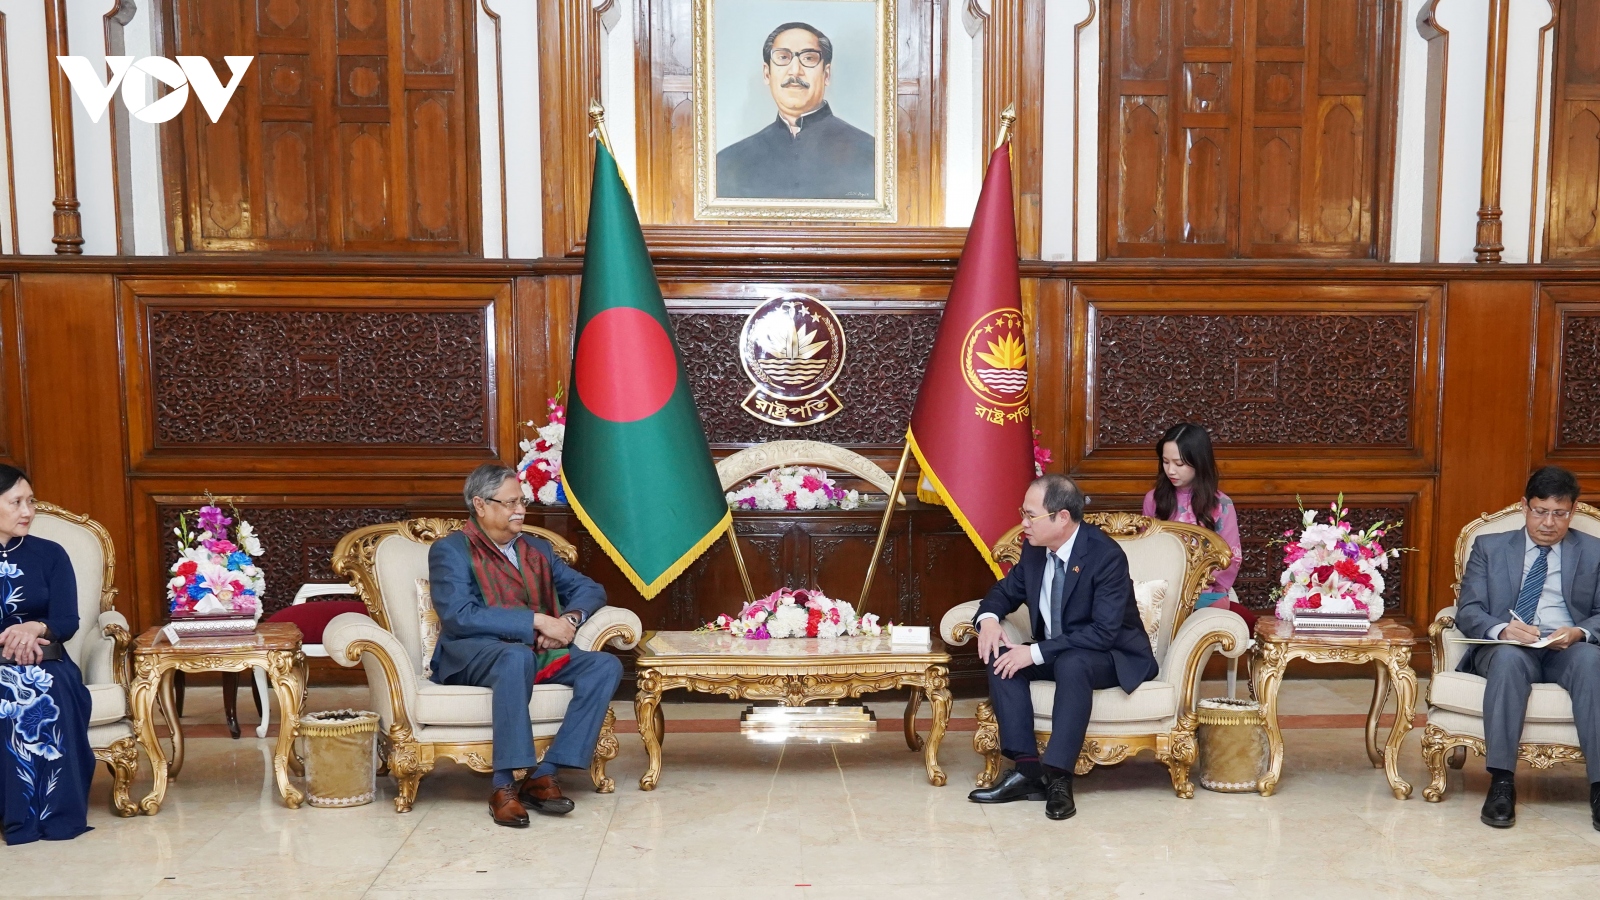 Đại sứ Nguyễn Mạnh Cường trình Thư ủy nhiệm lên Tổng thống Bangladesh